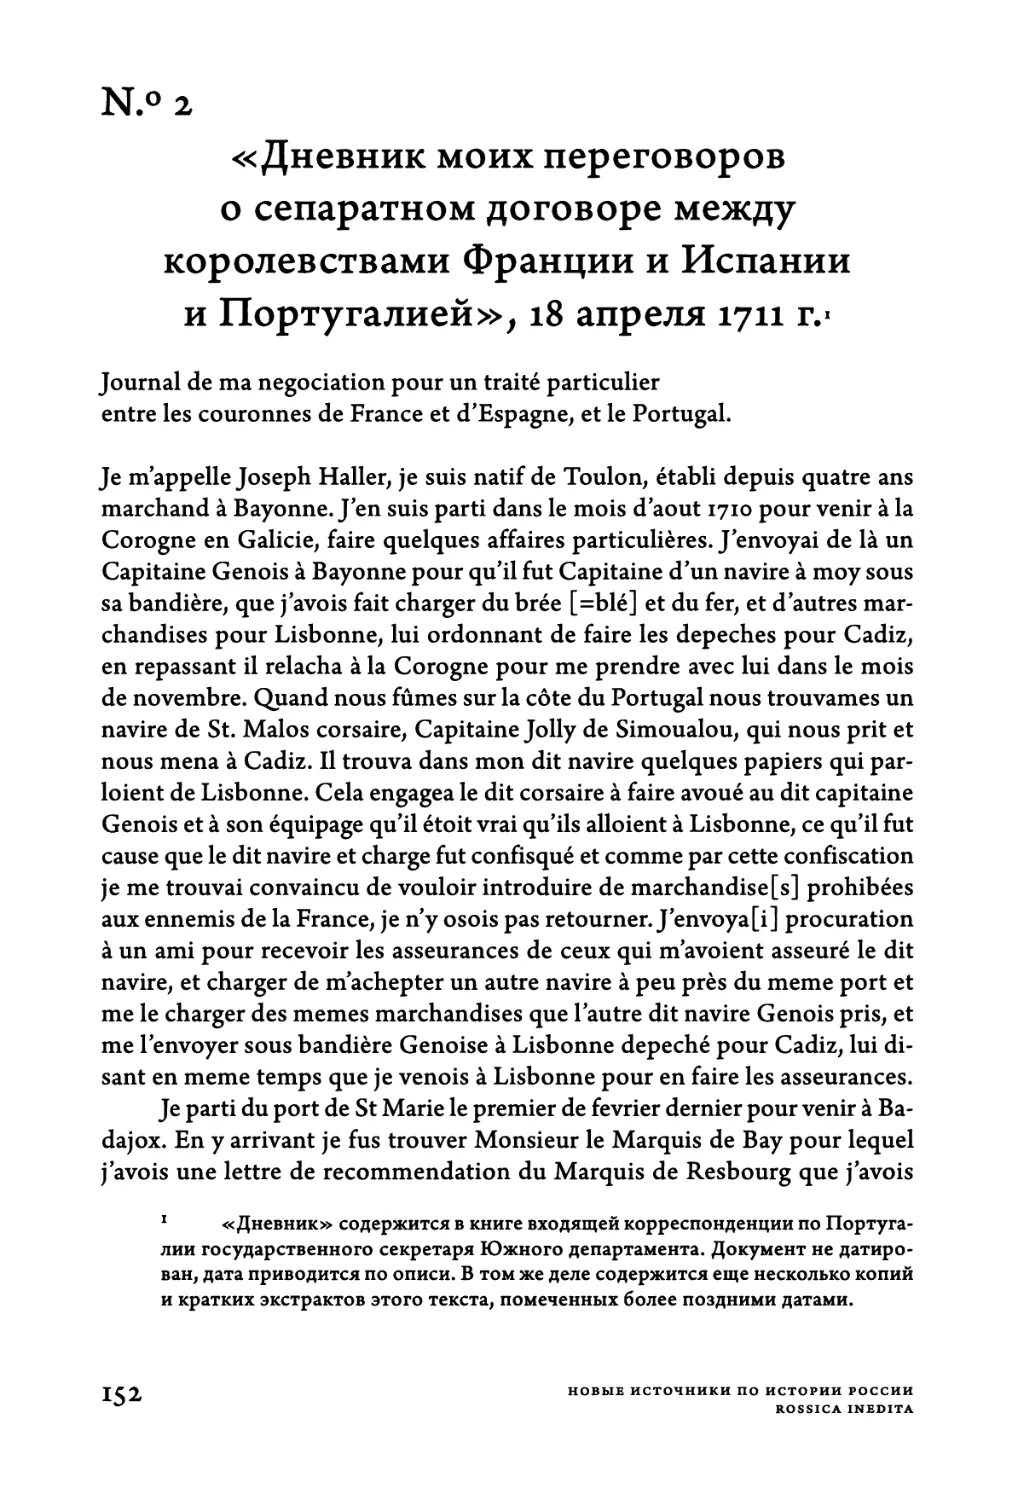 N.°2. «Дневник моих переговоров о сепаратном договоре между королевствами Франции и Испании и Португалией», 18 апреля 1711 г.